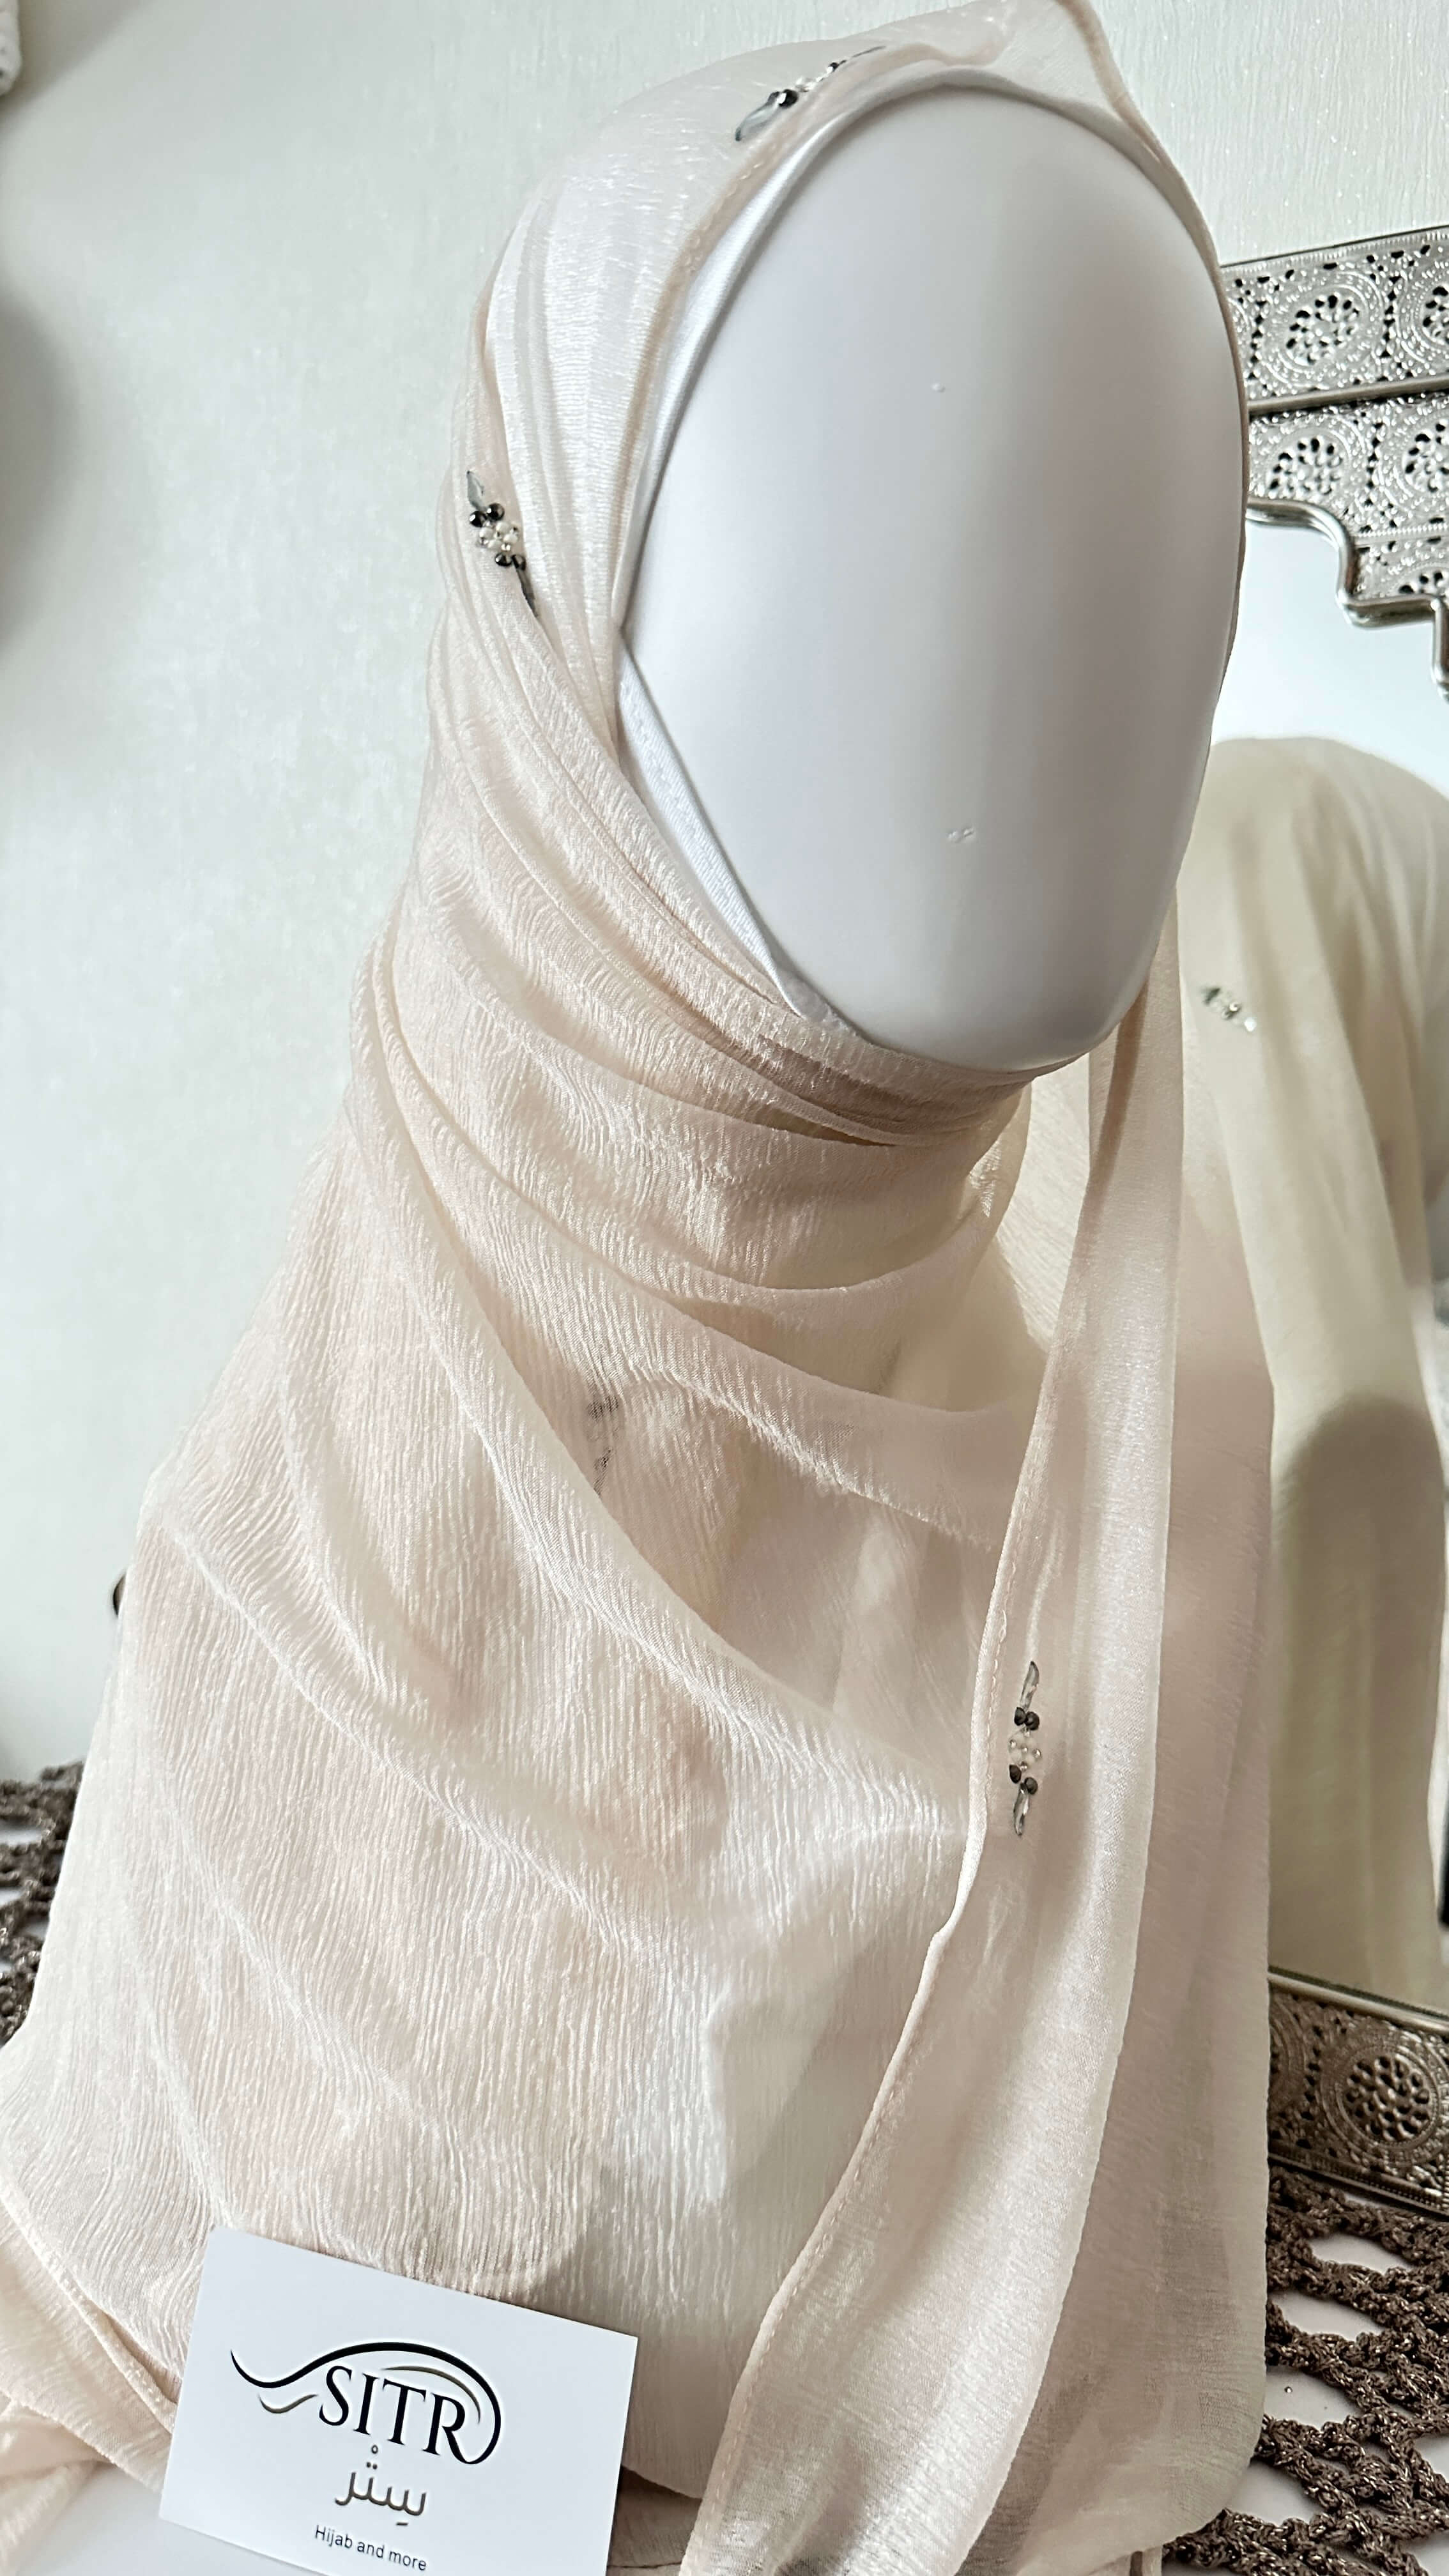 Deze moderne en prachtige hoofddoek is special gemaakt voor jou zodat je de hele dag op je gemak deze hoofddoek kan dragen. Voelt aangenaam op huid en blijft de hele dag mooie zitten.&nbsp;&nbsp;  Krijg een elegante en moderne look met deze hijab gemaakt van Kashmiri-materiaal.  Het is lichtgewicht, ademend en perfect voor dagelijks gebruik. Met een uniek ontwerp.